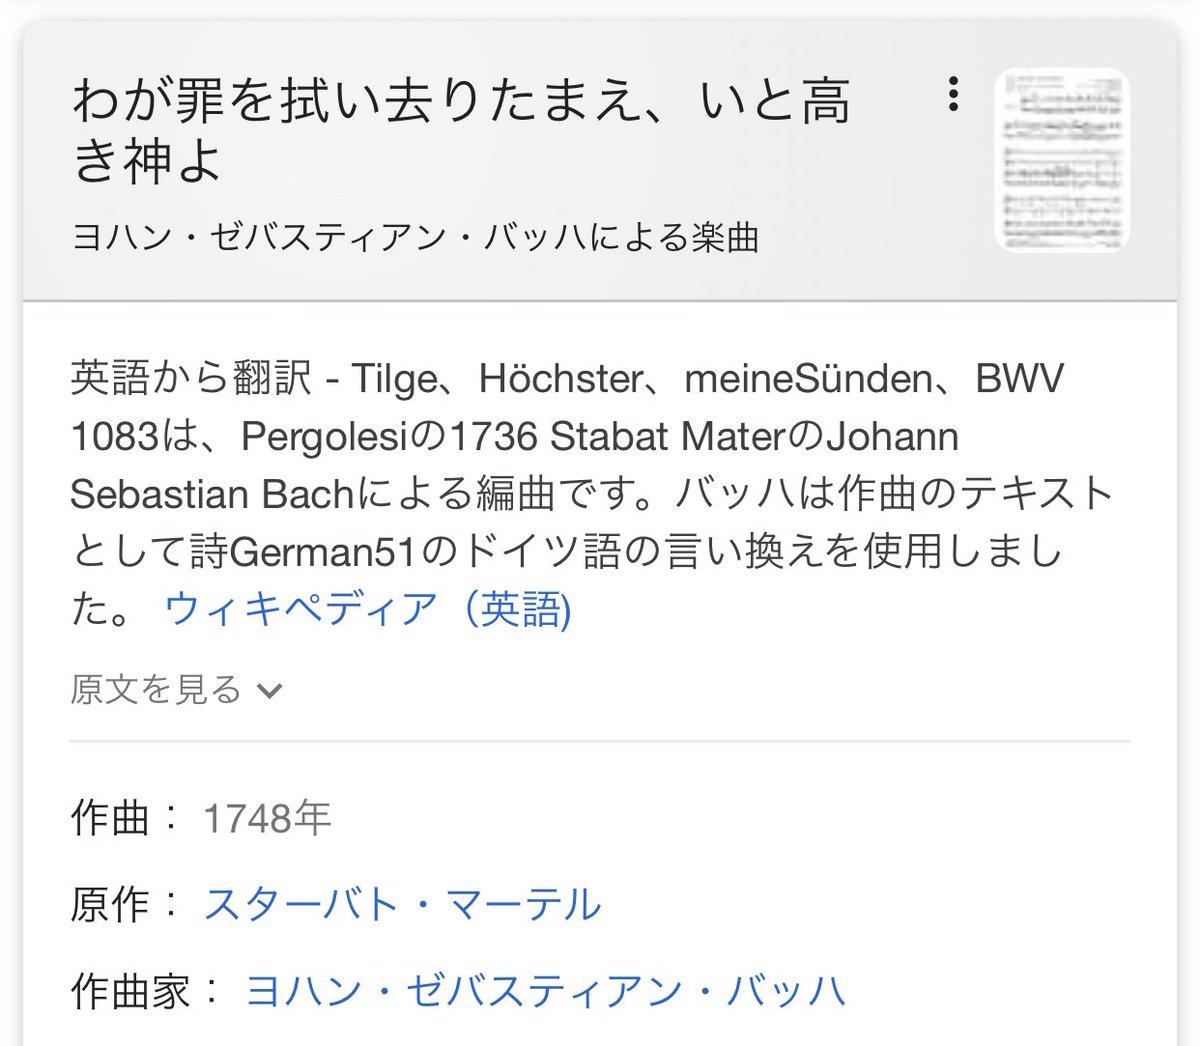 J S バッハ 合唱曲大全集 バッハ コレギウム ジャパンを買ってからの記録 随時更新 1 5で1度〆 2ページ目 Togetter